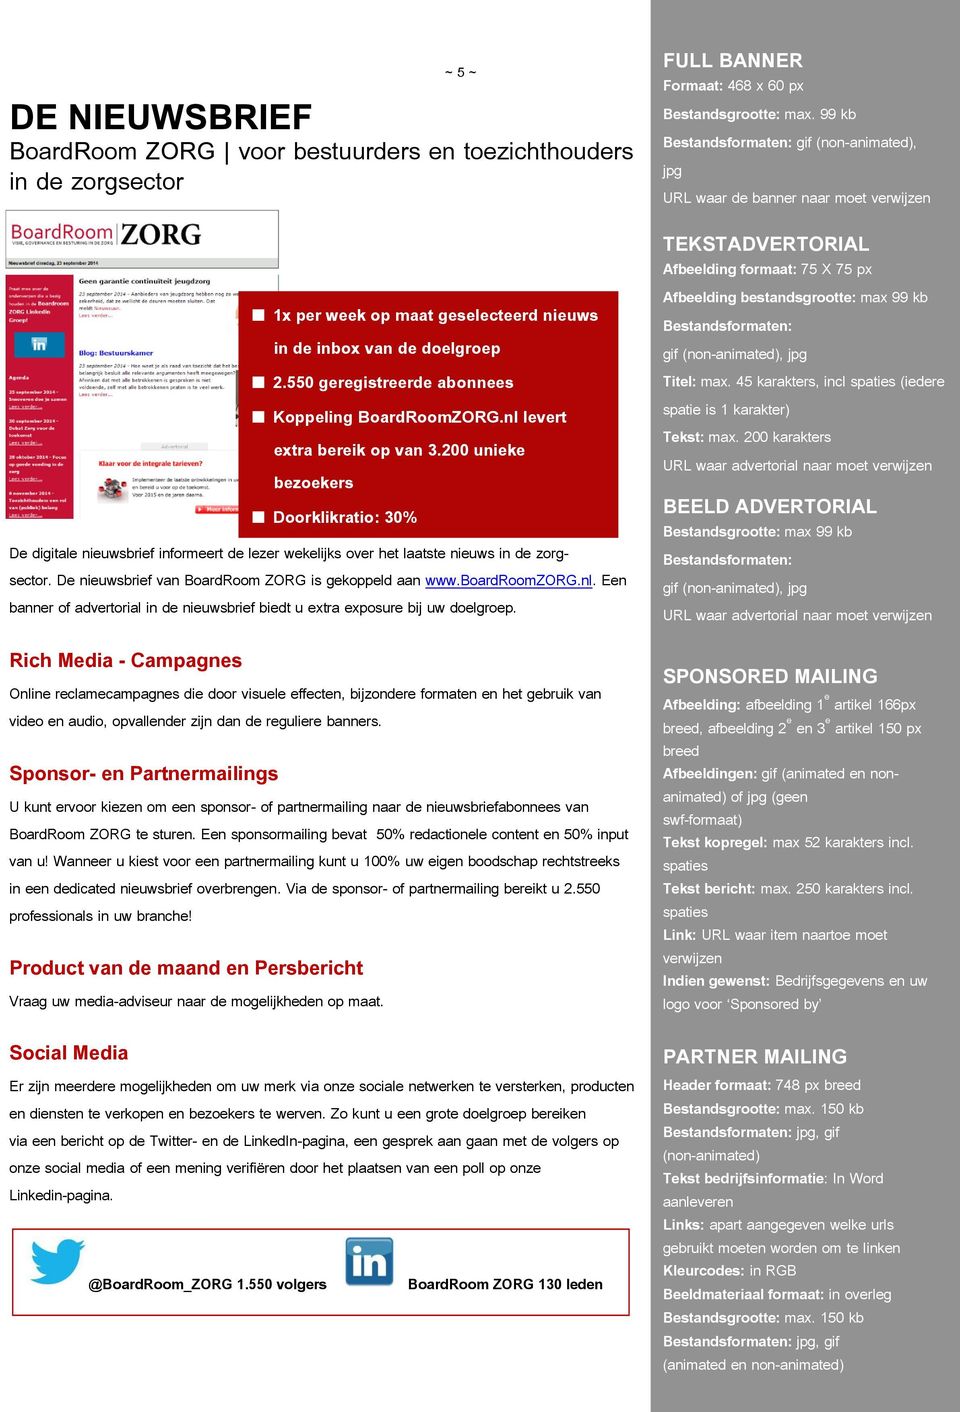 De nieuwsbrief van BoardRoom ZORG is gekoppeld aan www.boardroomzorg.nl. Een banner of advertorial in de nieuwsbrief biedt u extra exposure bij uw doelgroep.